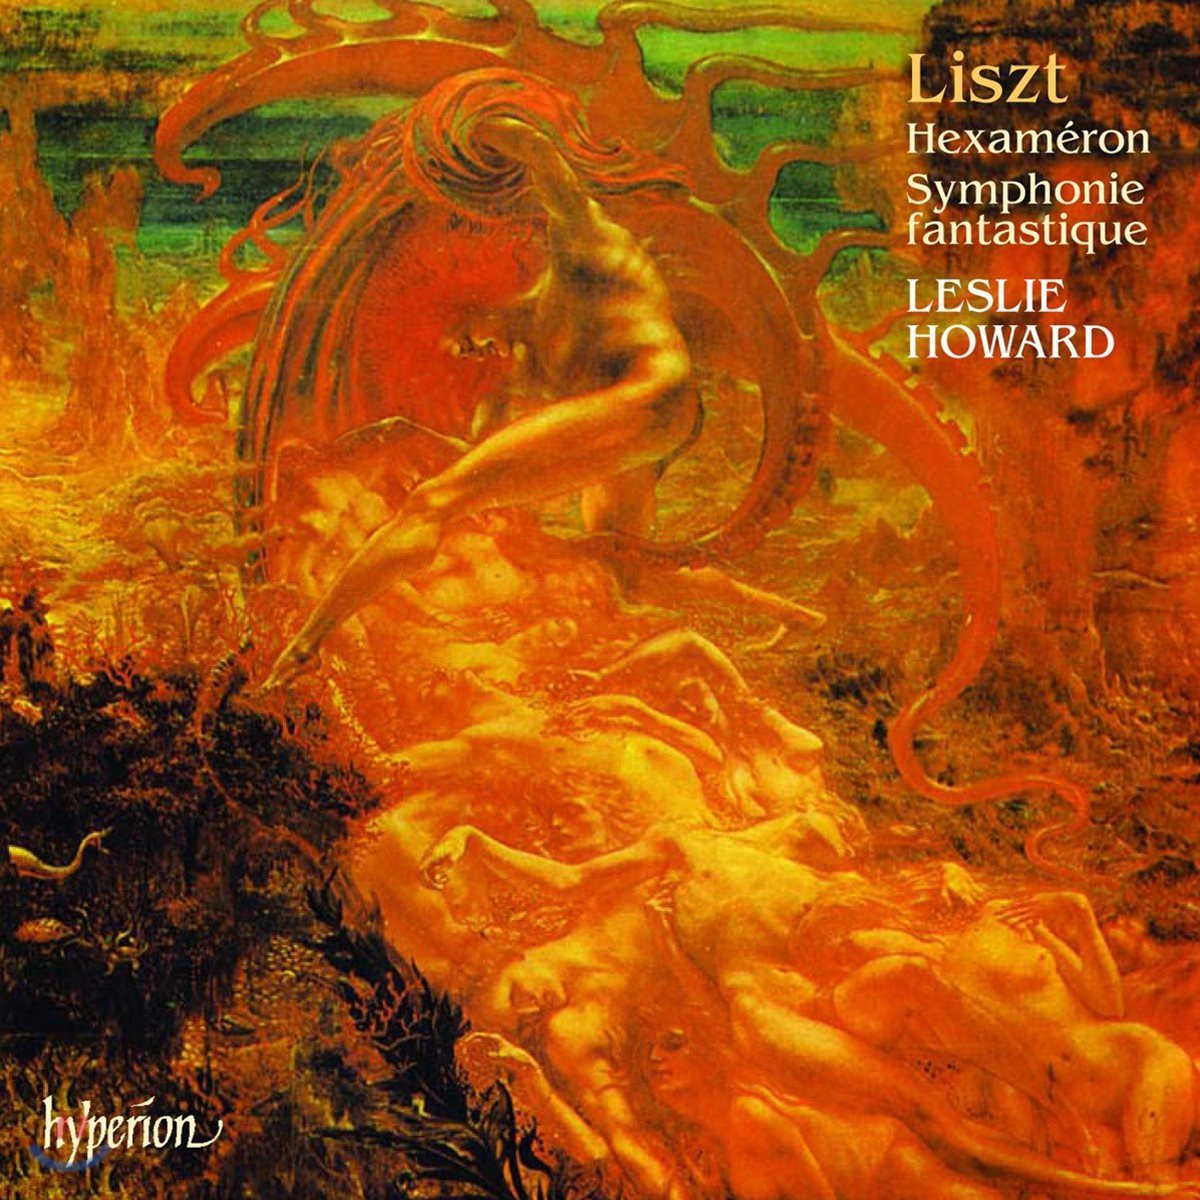 Leslie Howard 리스트: 헥사메론, 음악의 초상 (Liszt: Hexameron, Un portrait en musique)